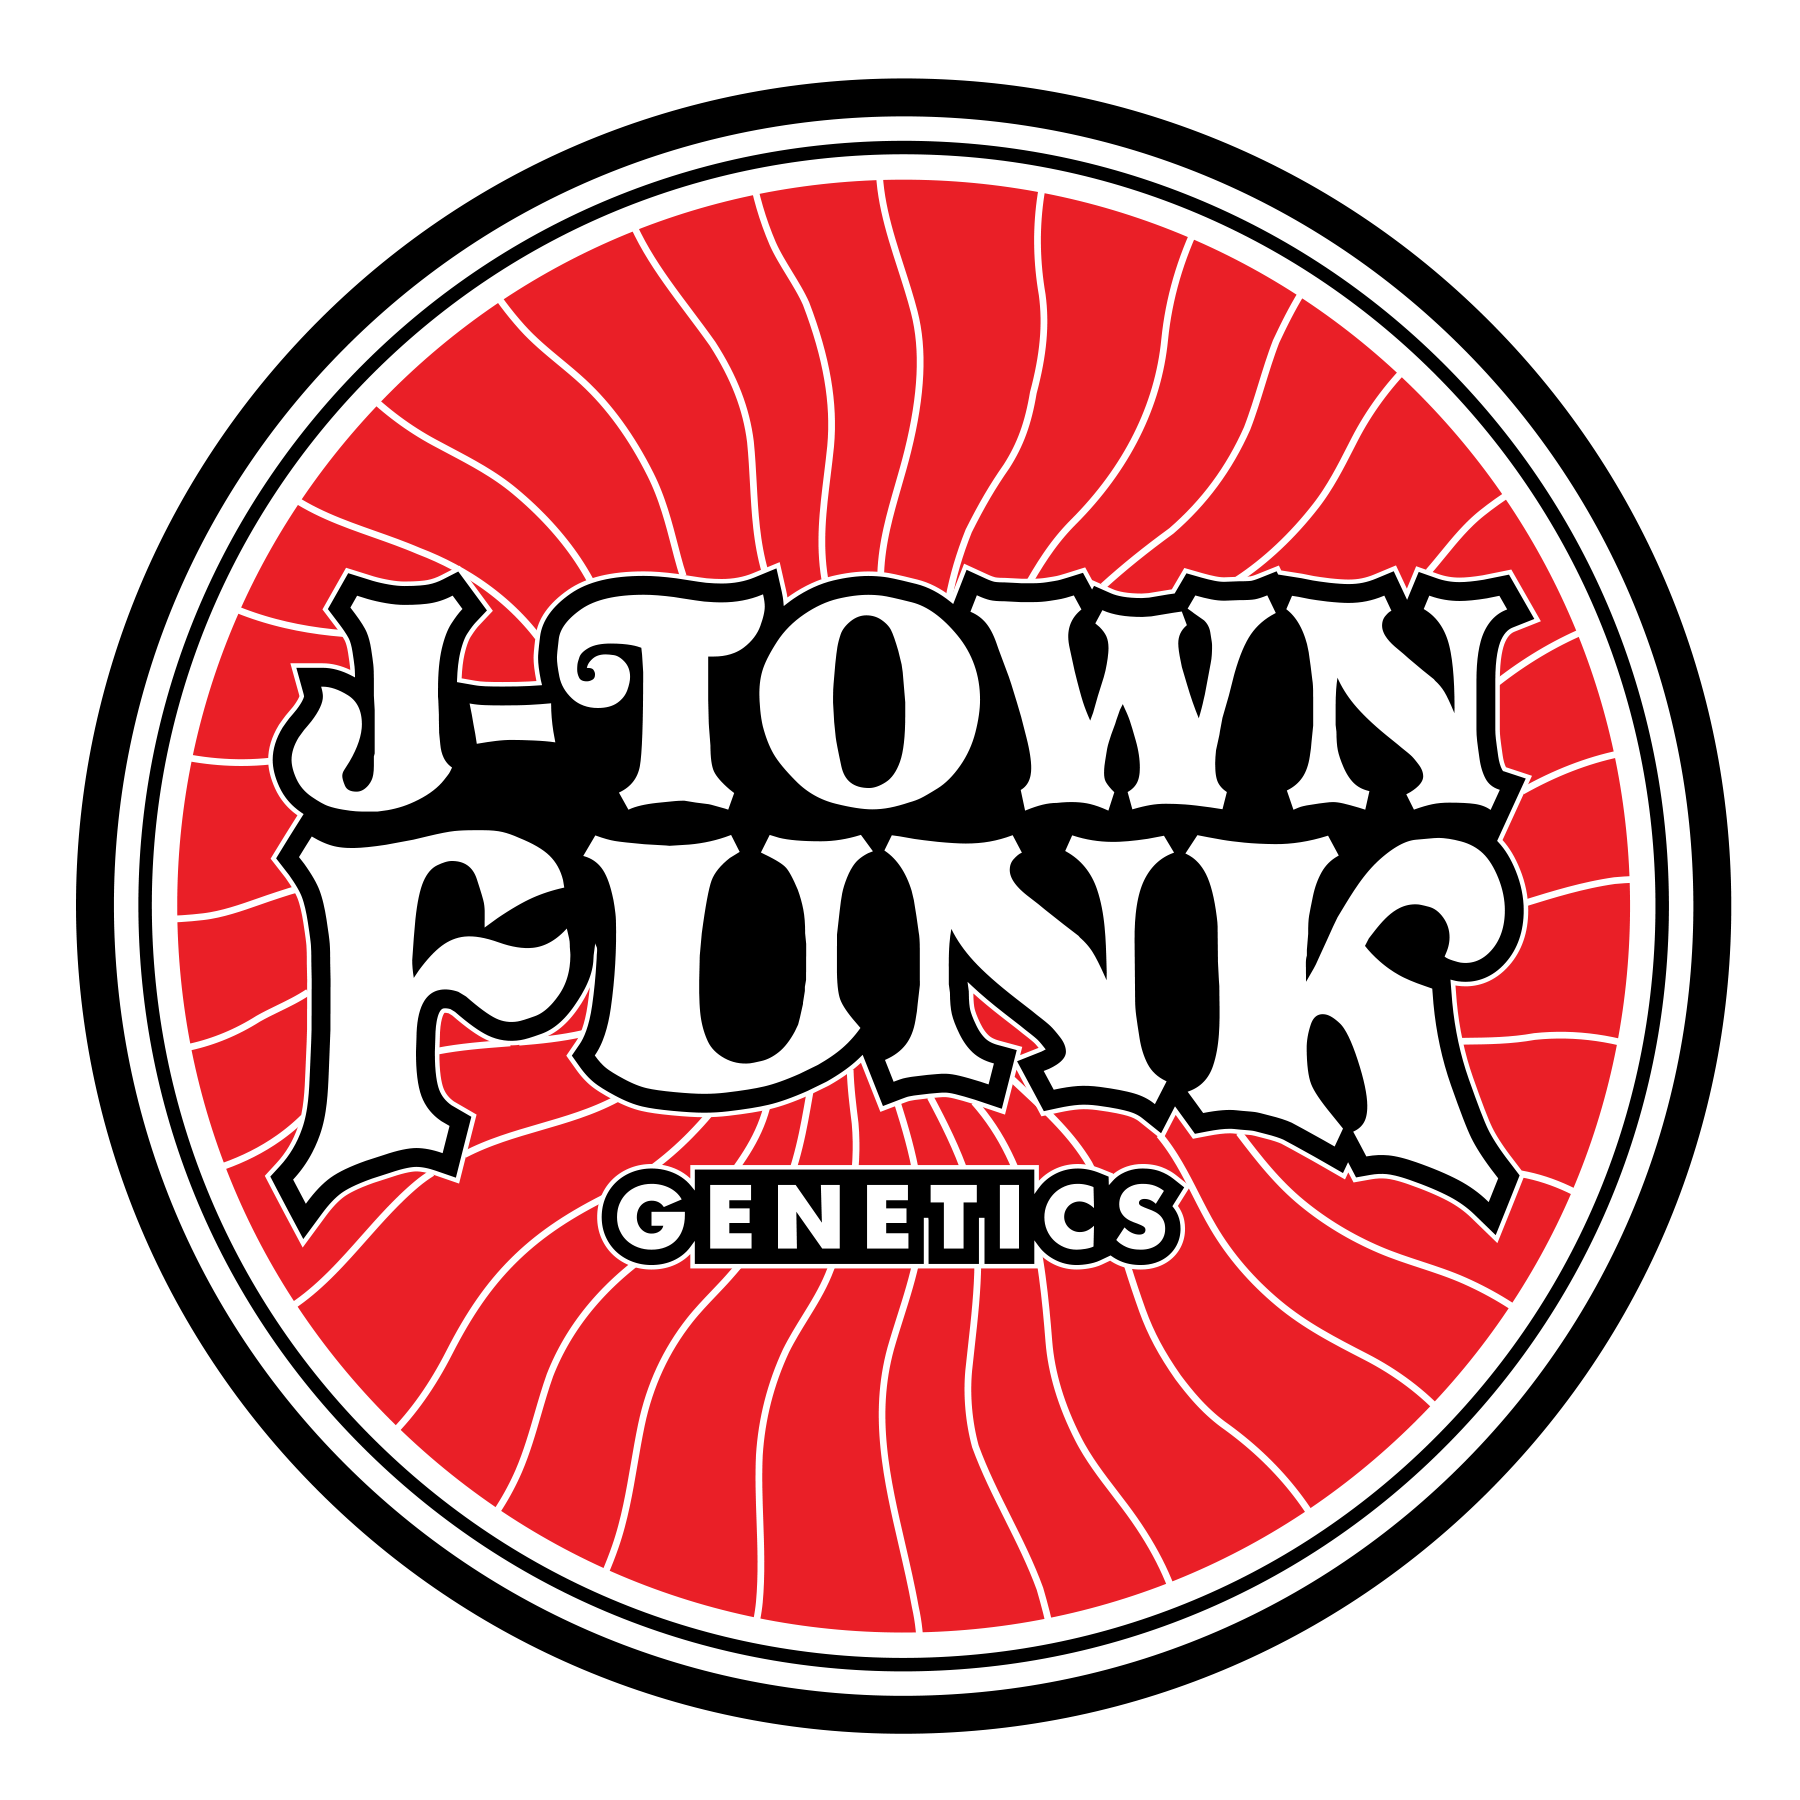 J-Town Funk Genetics